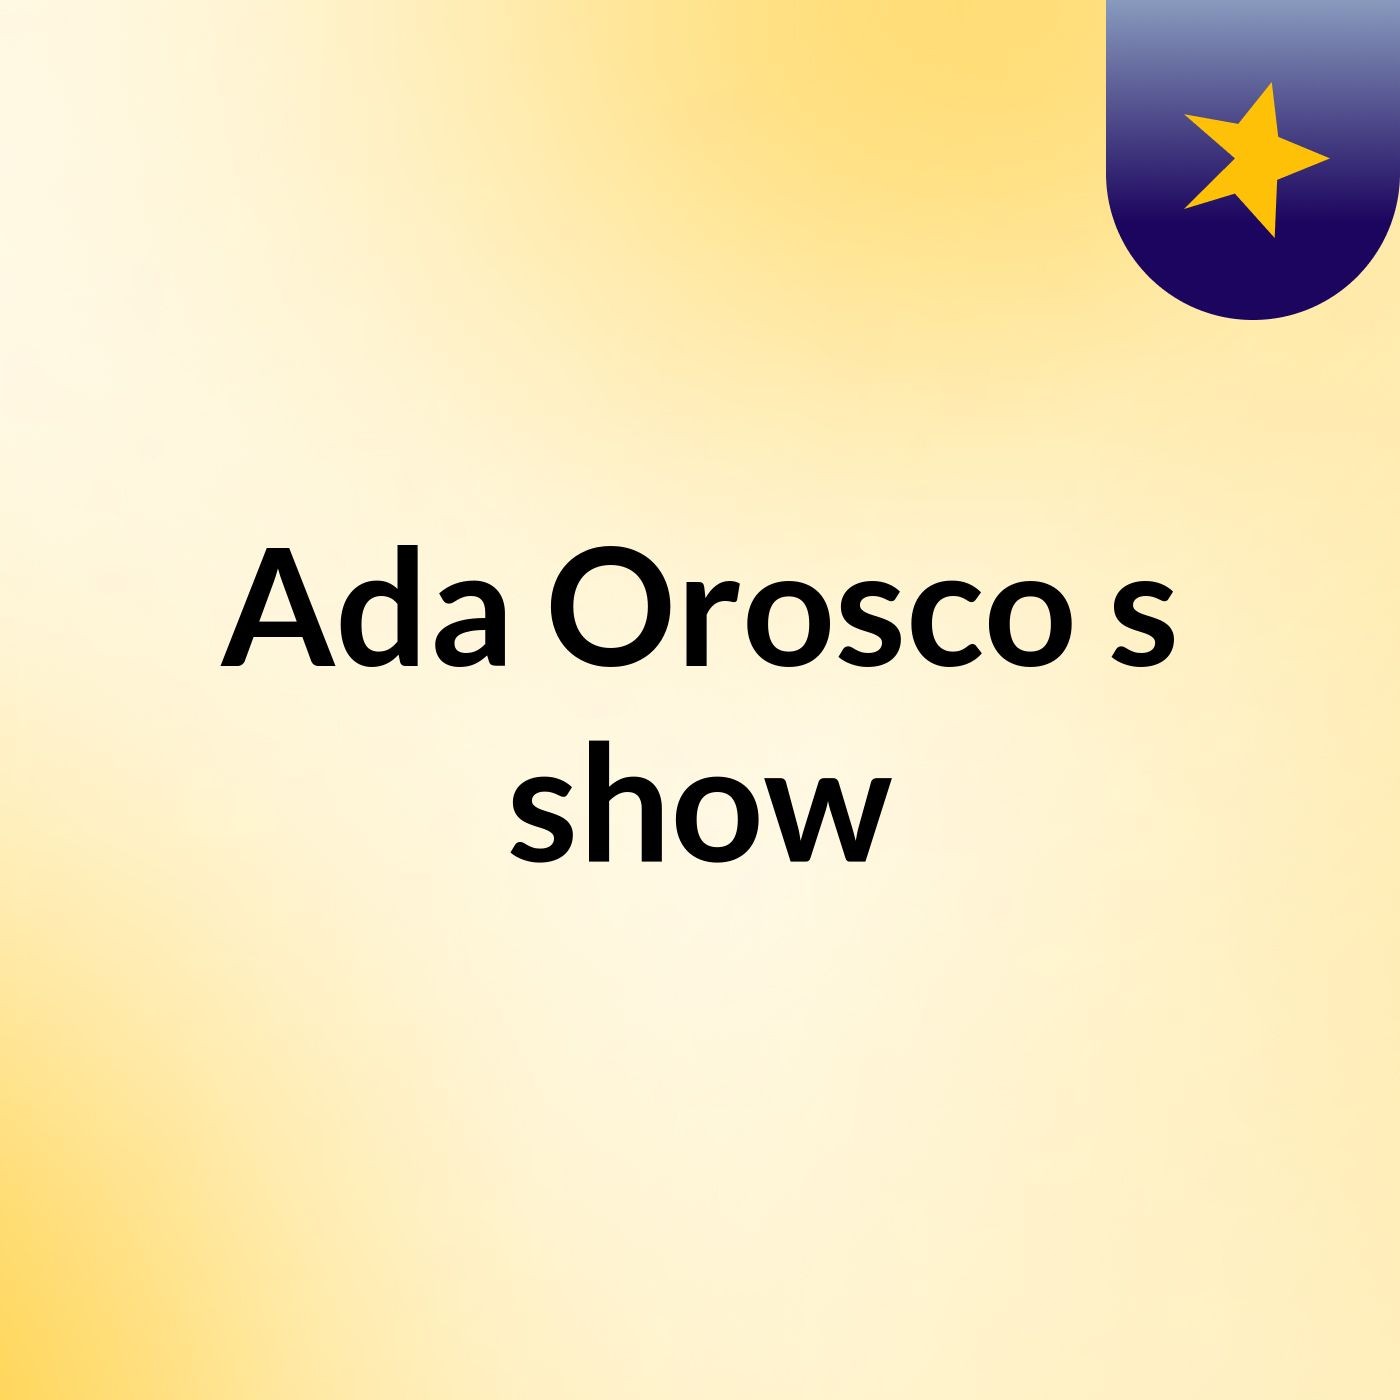 Ada Orosco's show